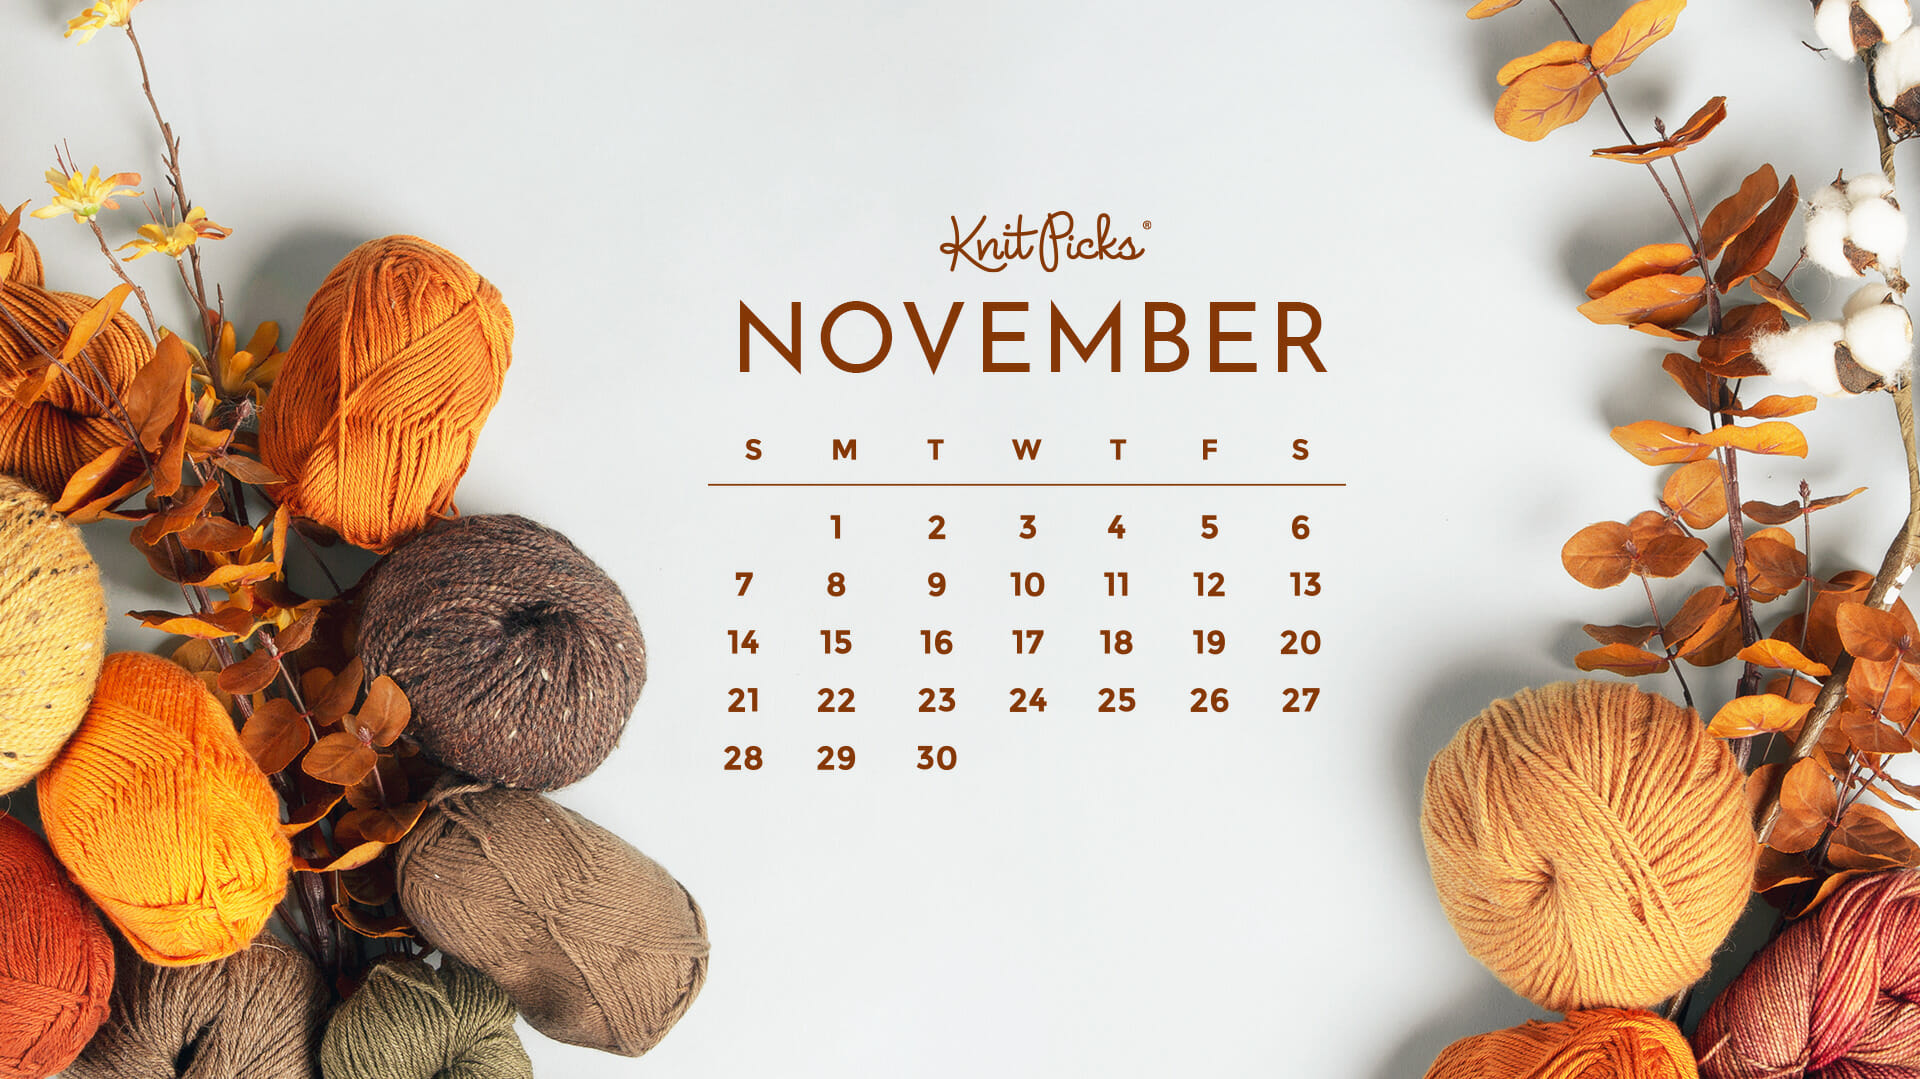 Lịch tháng 11/2021 (November 2021 calendar): Hãy cùng nhau khám phá lịch tháng 11/2021 để chuẩn bị cho những kế hoạch trong tháng cuối cùng của năm. Cùng nhìn vào hình ảnh và lên lịch nào!